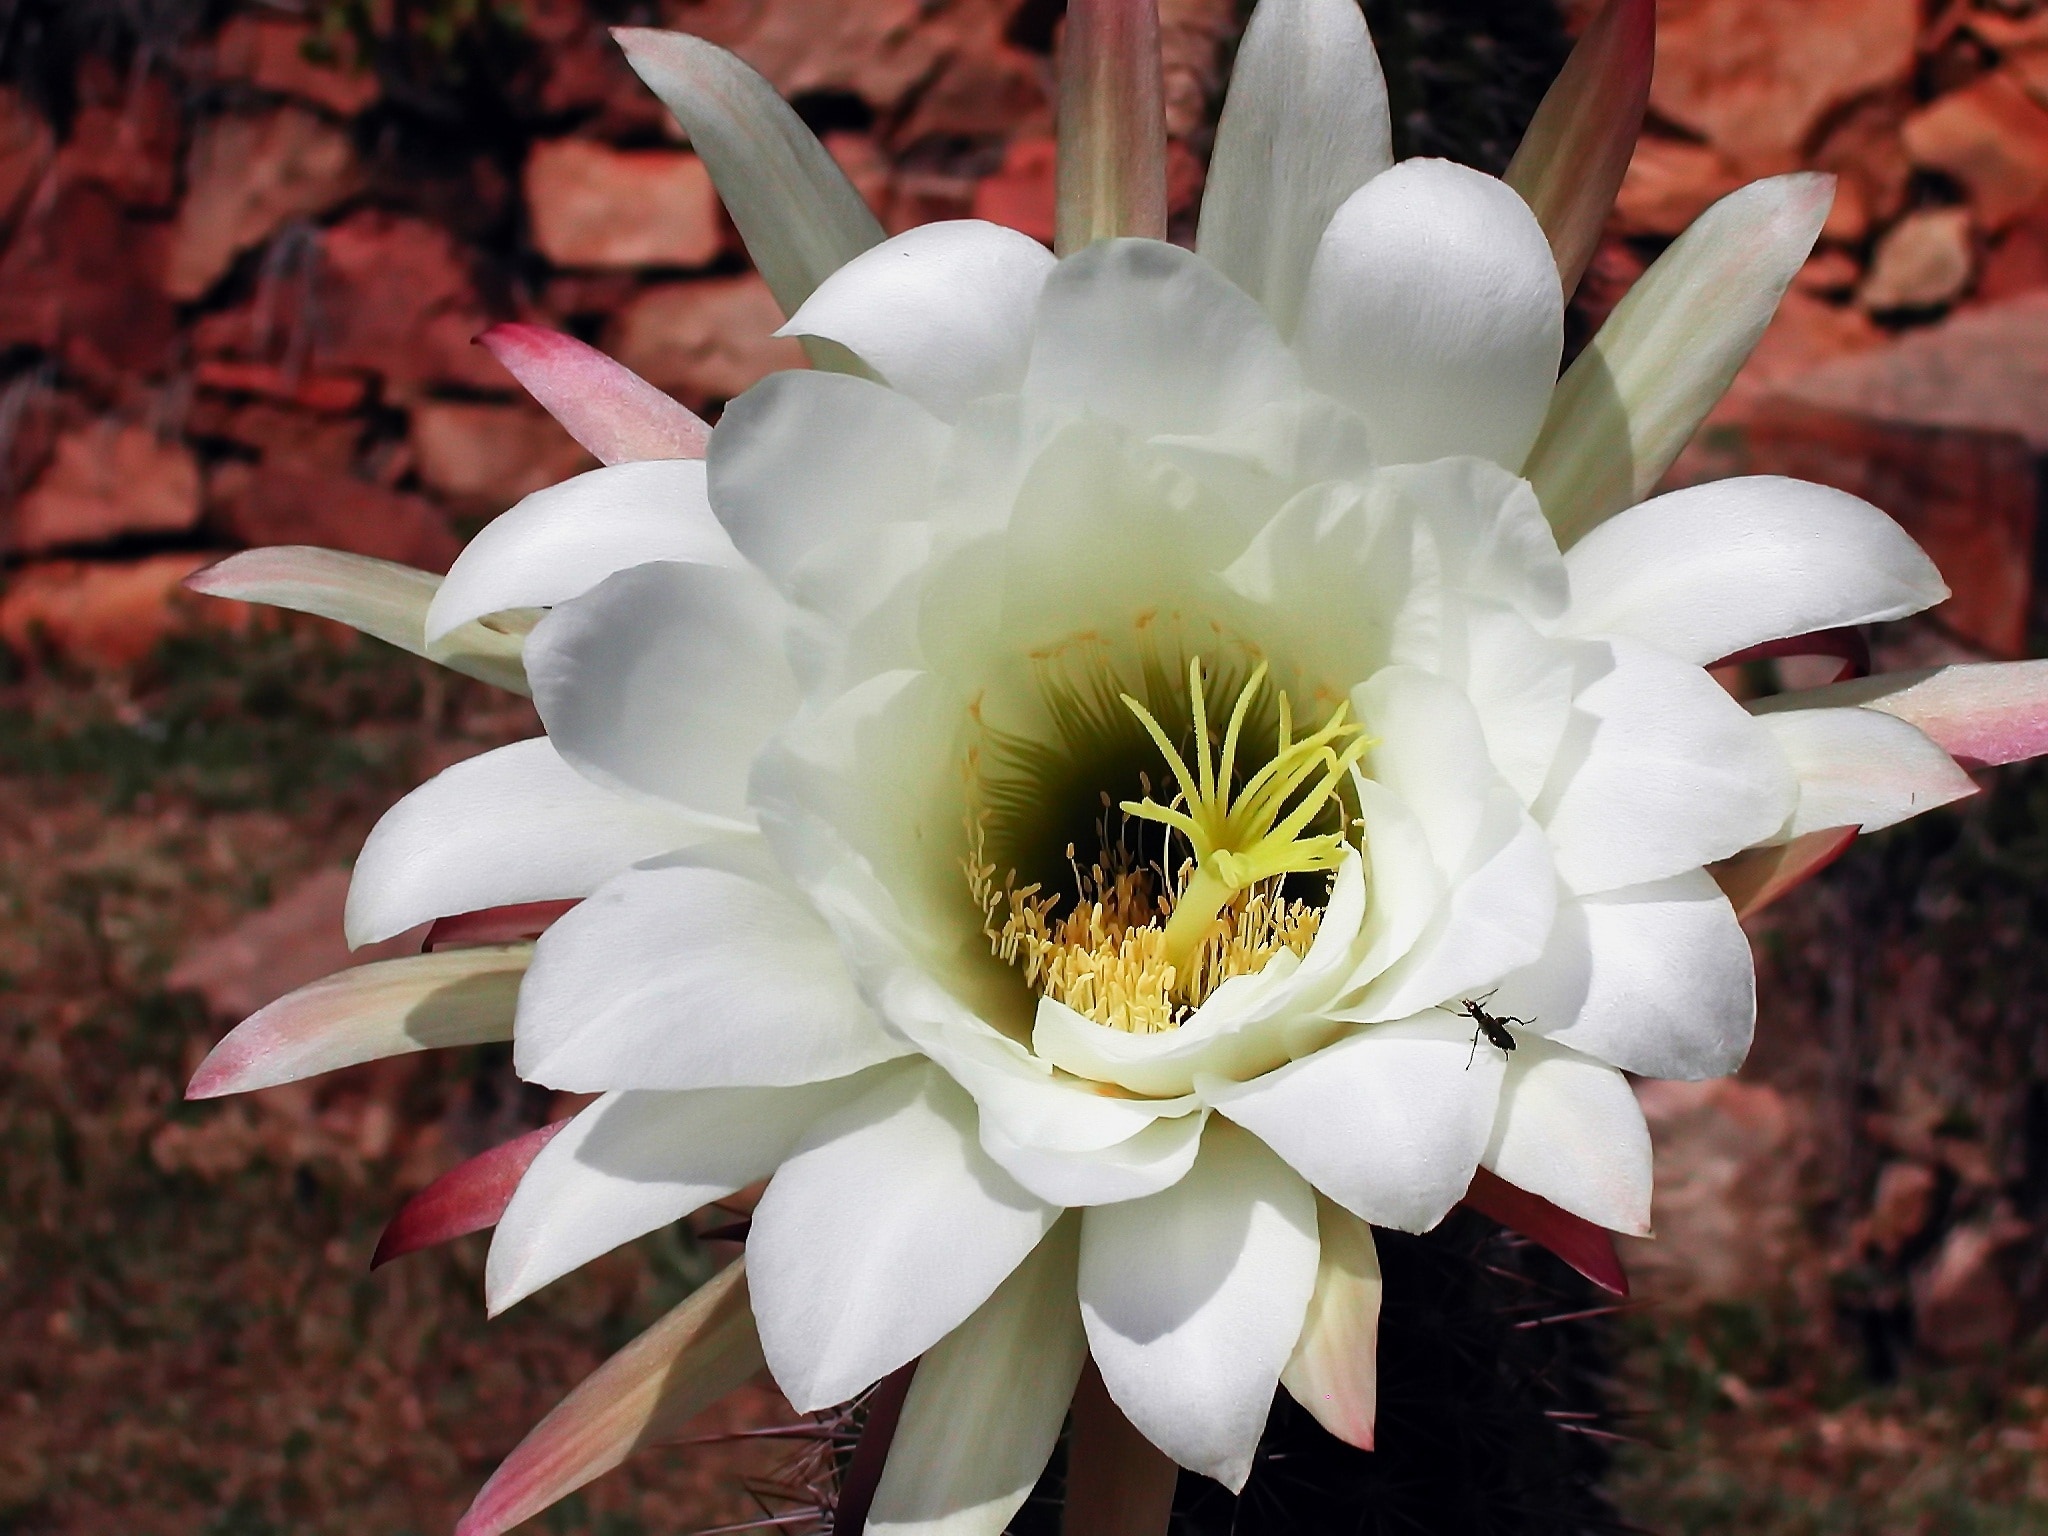 White, Cactus, Flowering, Flower, Plant, flower, petal